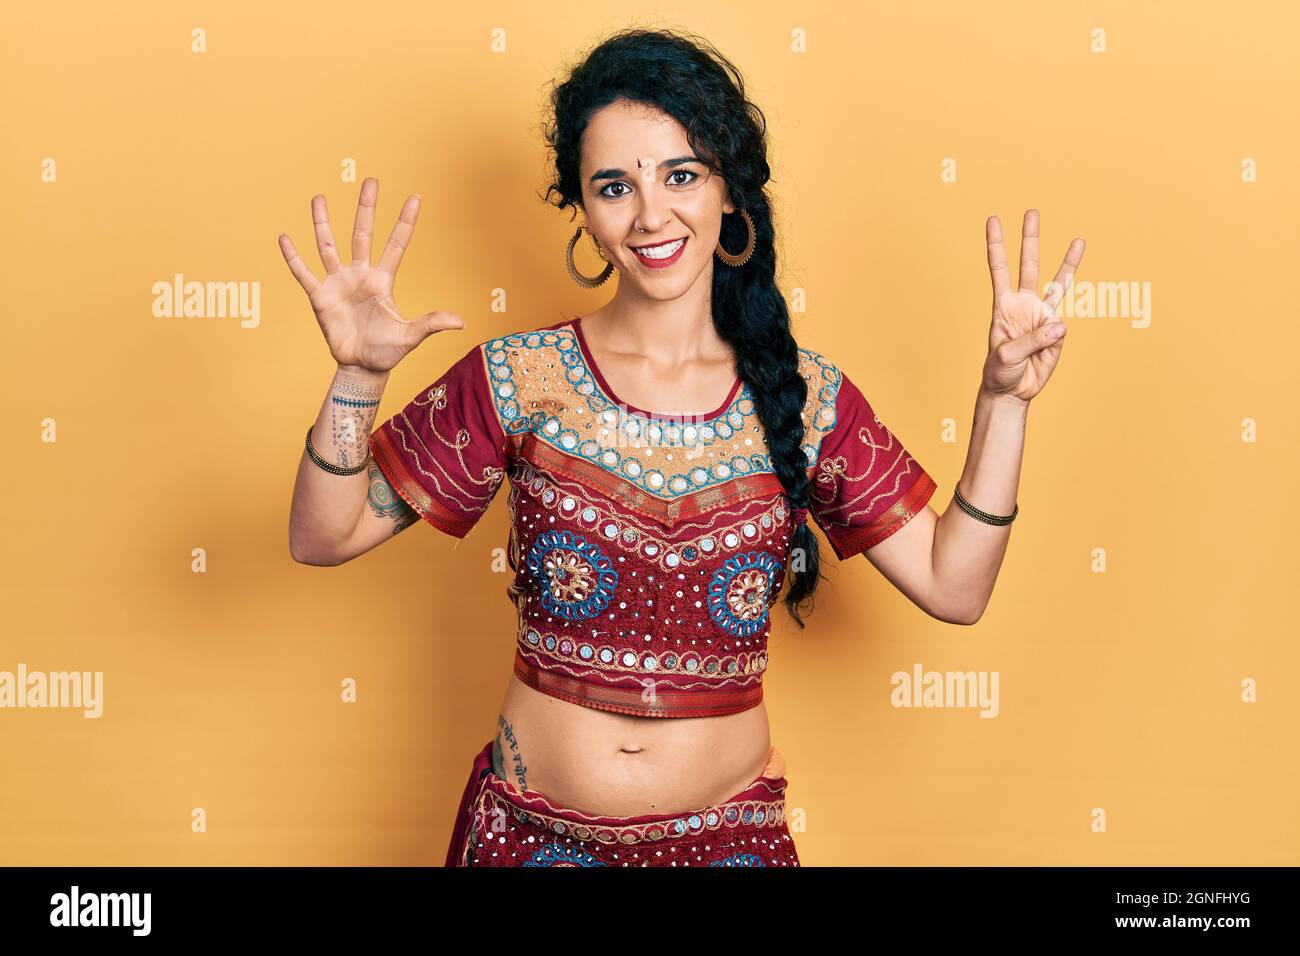 Junge Frau in Bindi- und bollywood-Kleidung zeigt und zeigt mit den Fingern Nummer acht auf, während sie selbstbewusst und glücklich lächelt. Stockfoto